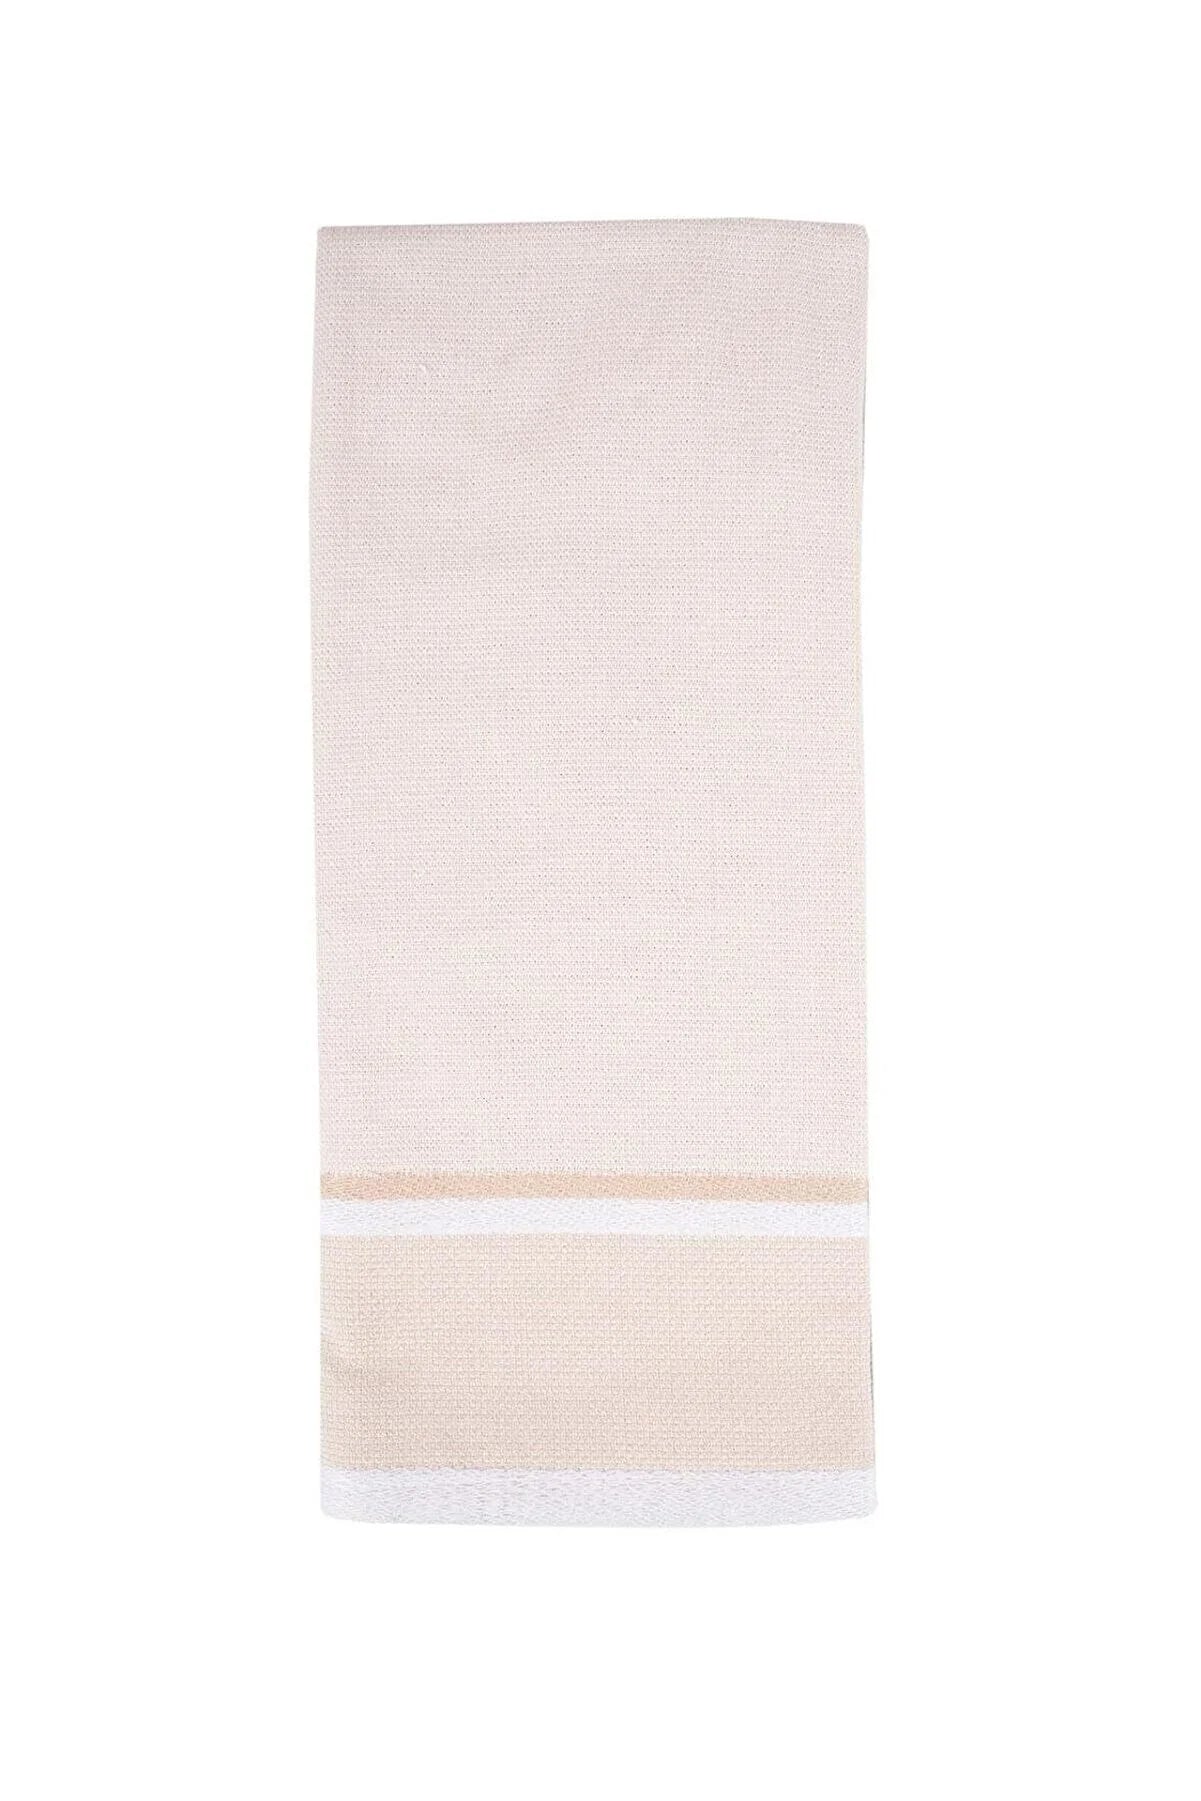 Cotton Kitchen Towel  40x70cm